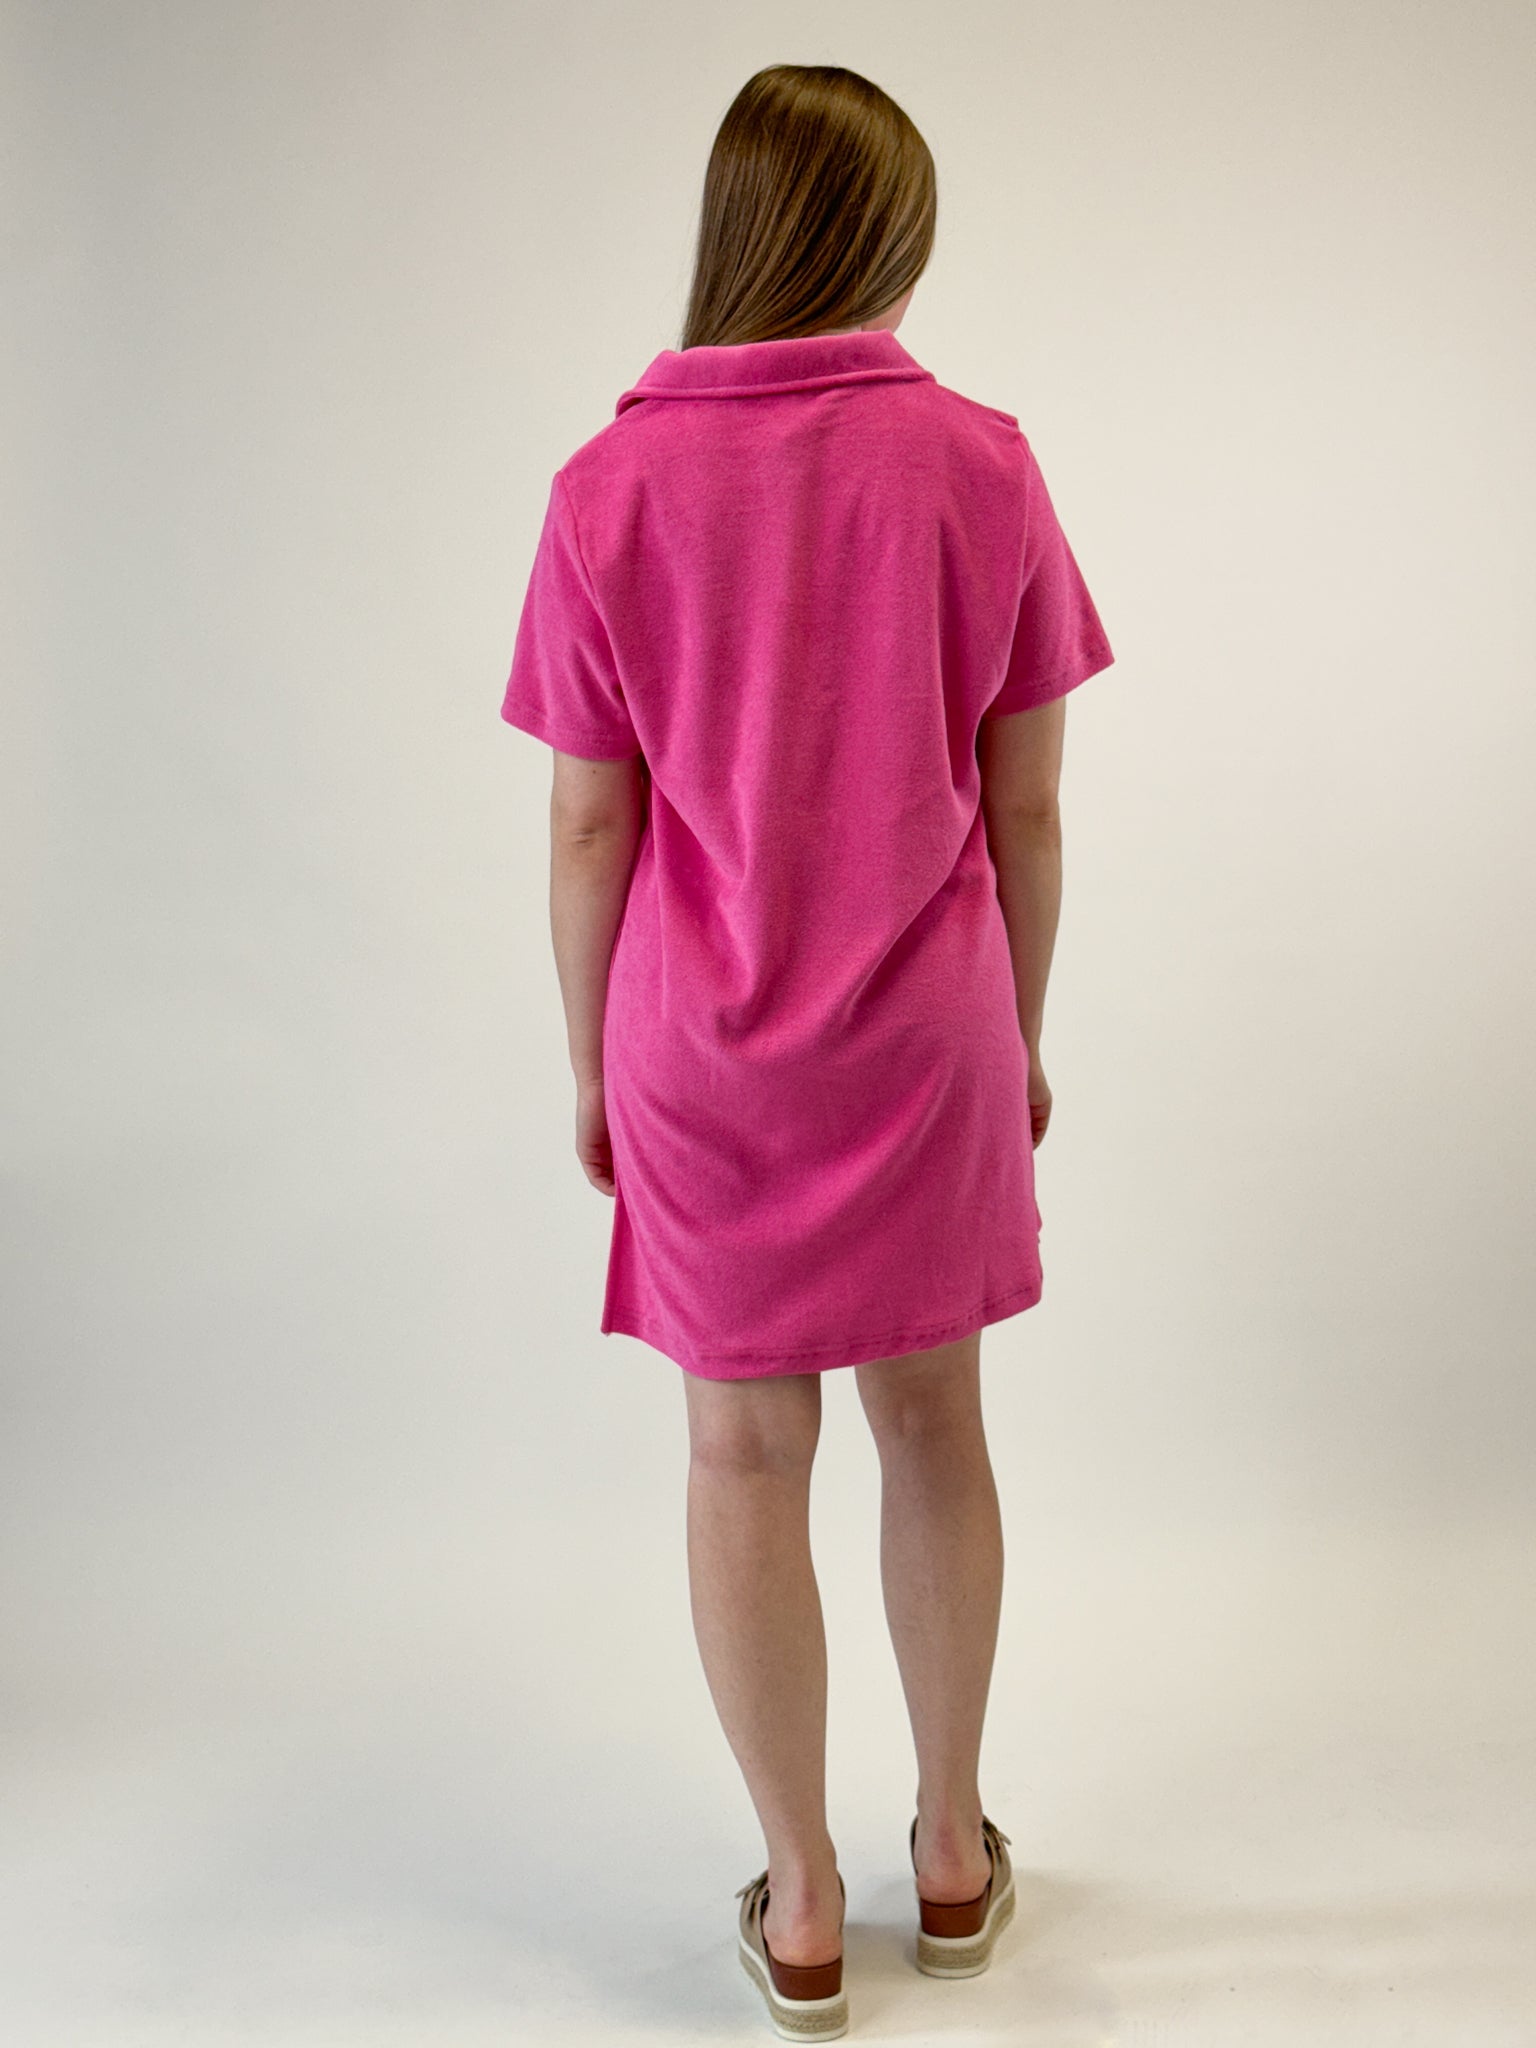 Hot Pink 1/2 Sleeve Dress